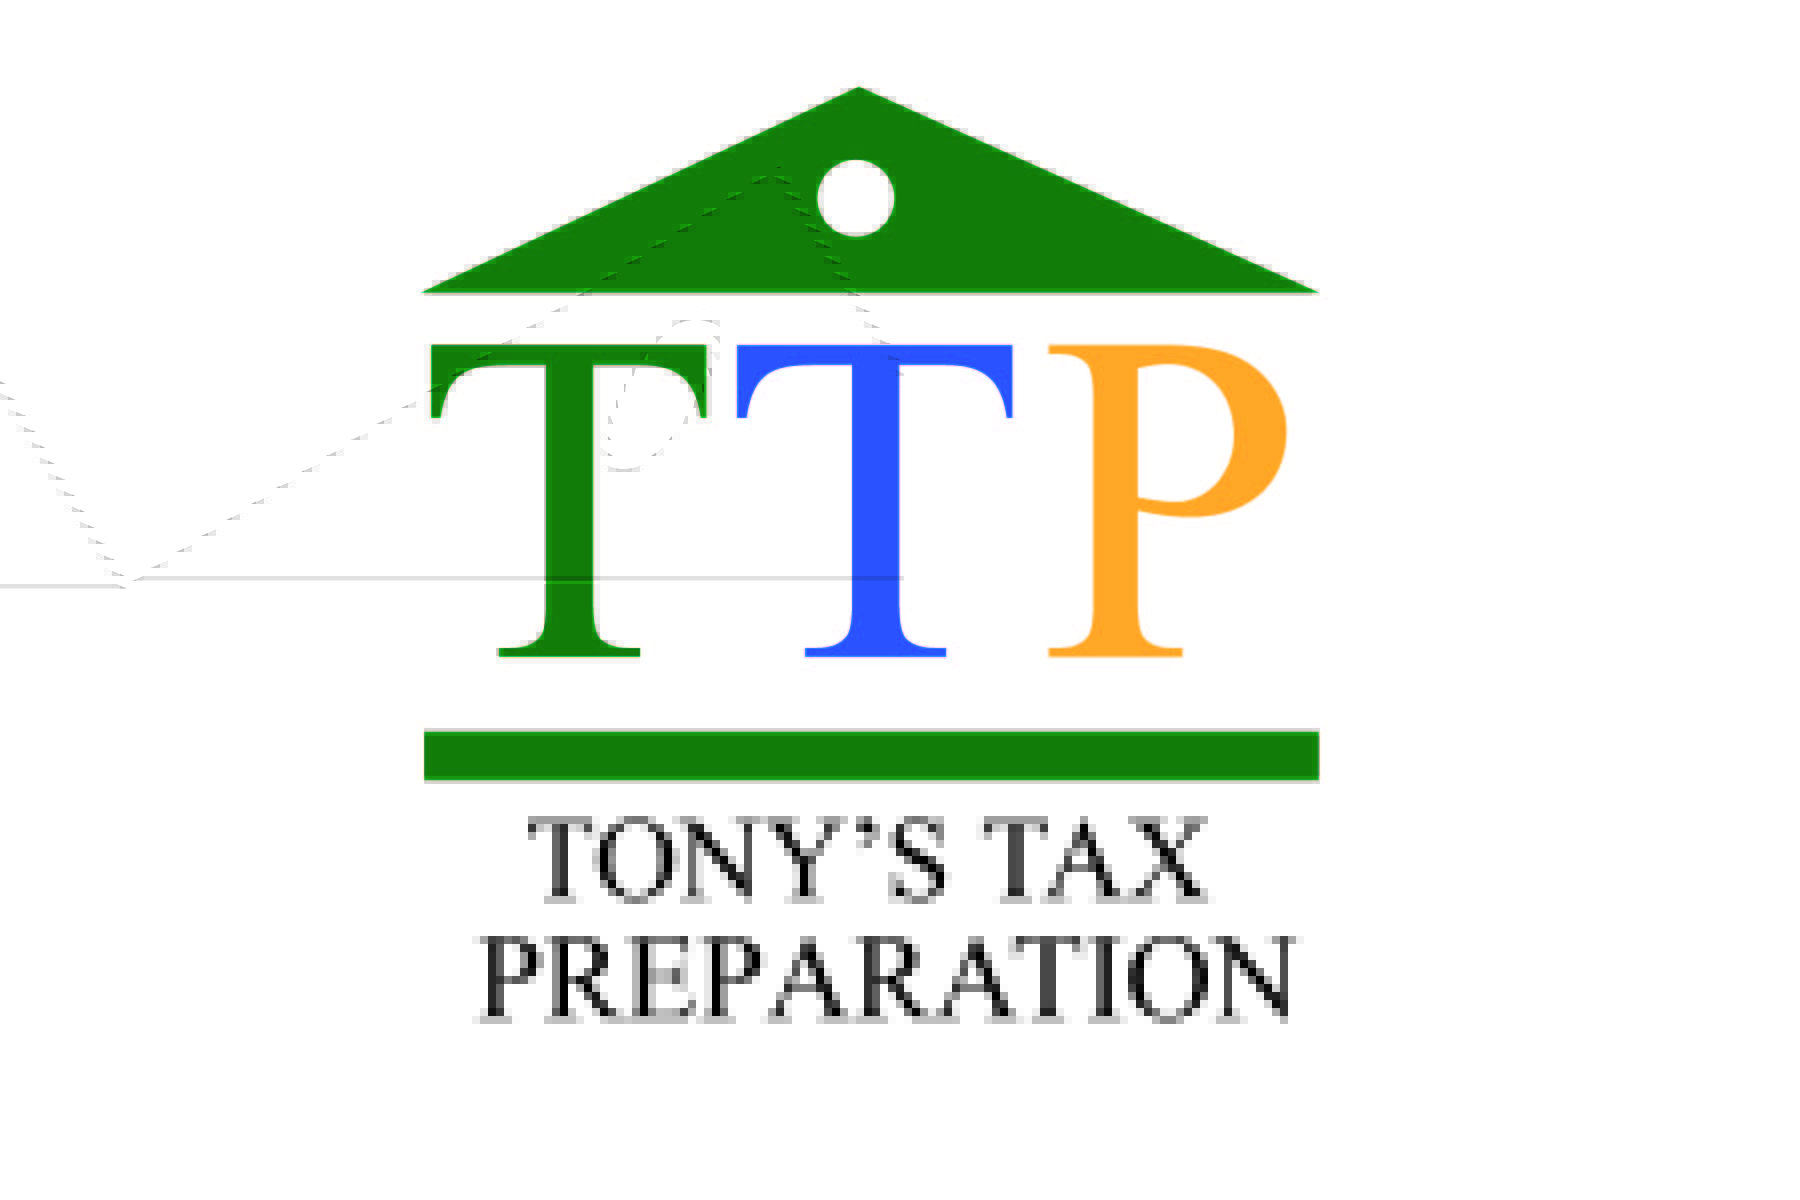 Tony's Tax Preparation